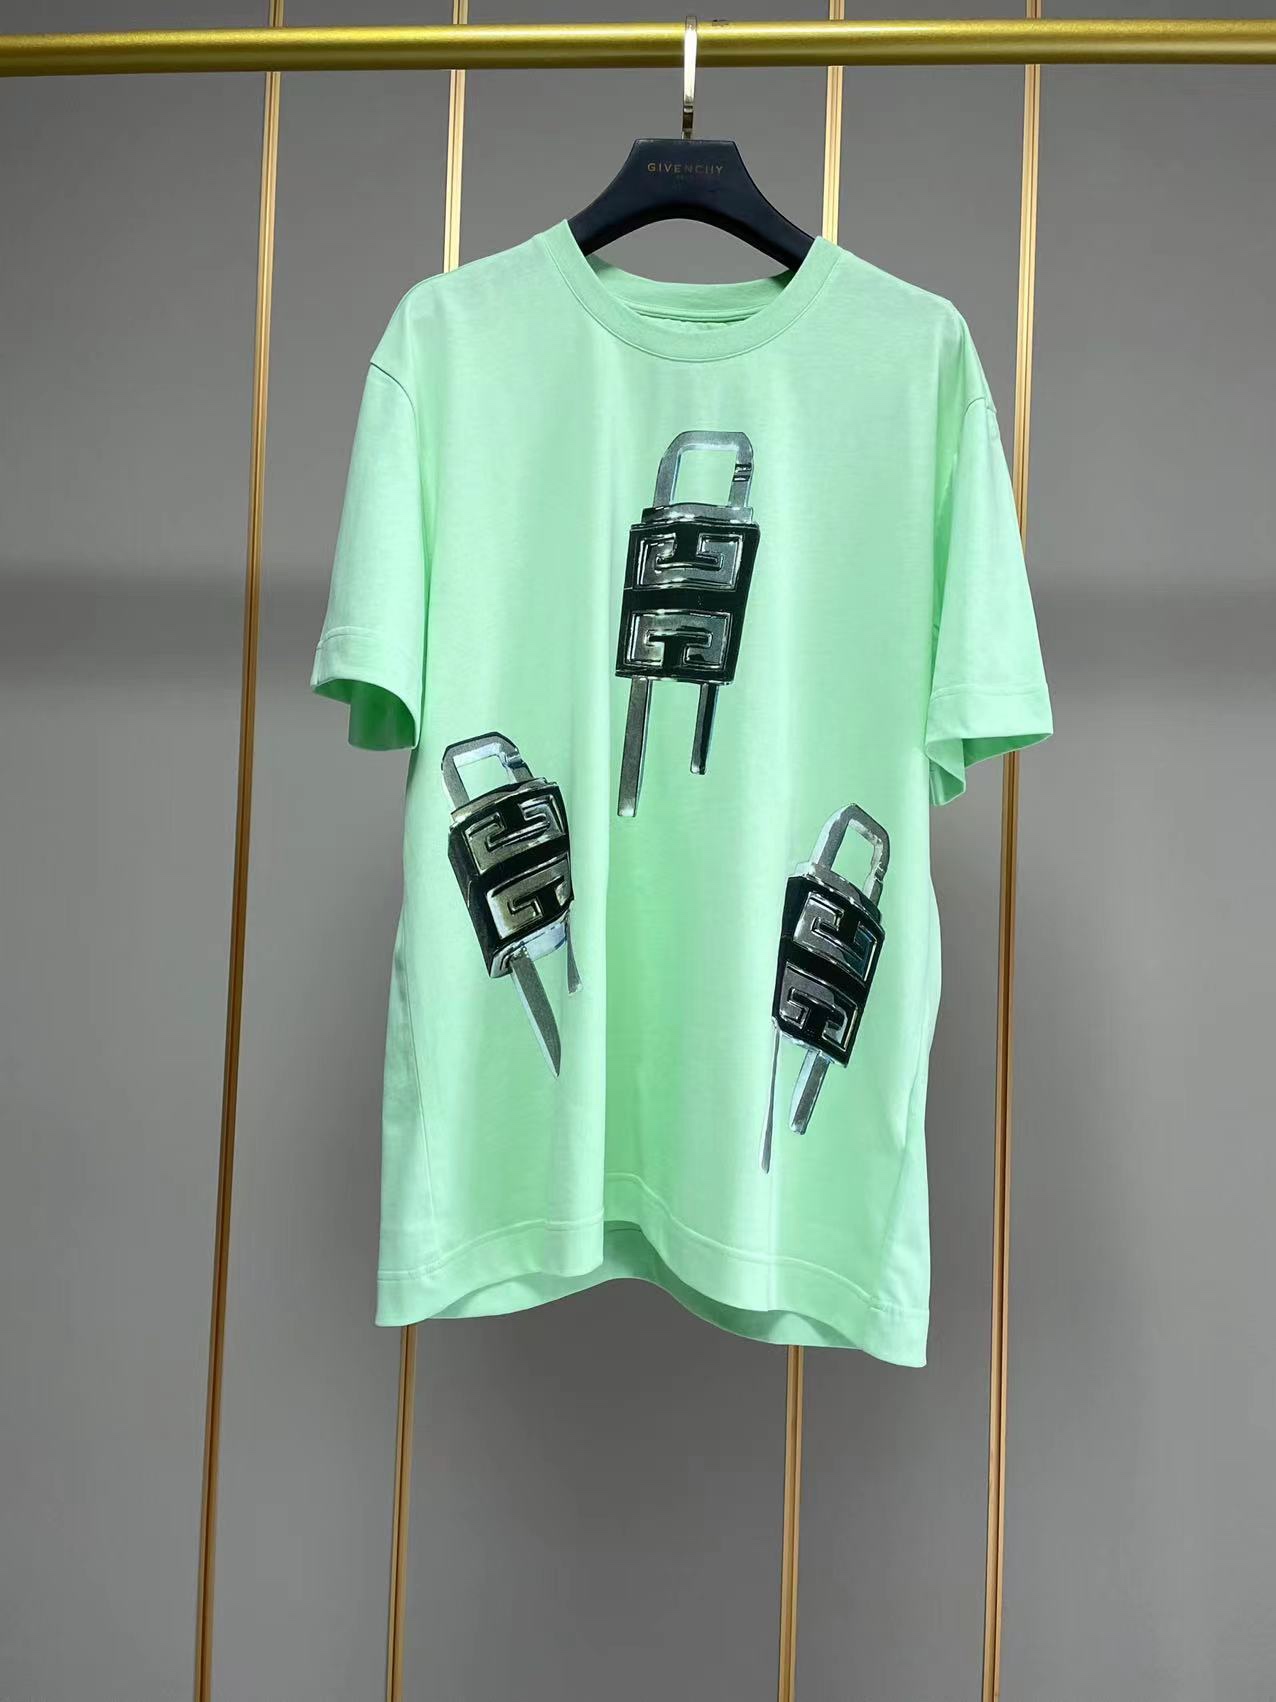 ジバンシィtシャツ激安通販 純綿 短袖 トップス ファッション ロックプリント 柔らかい 大販売 2色可選 グリーン_1